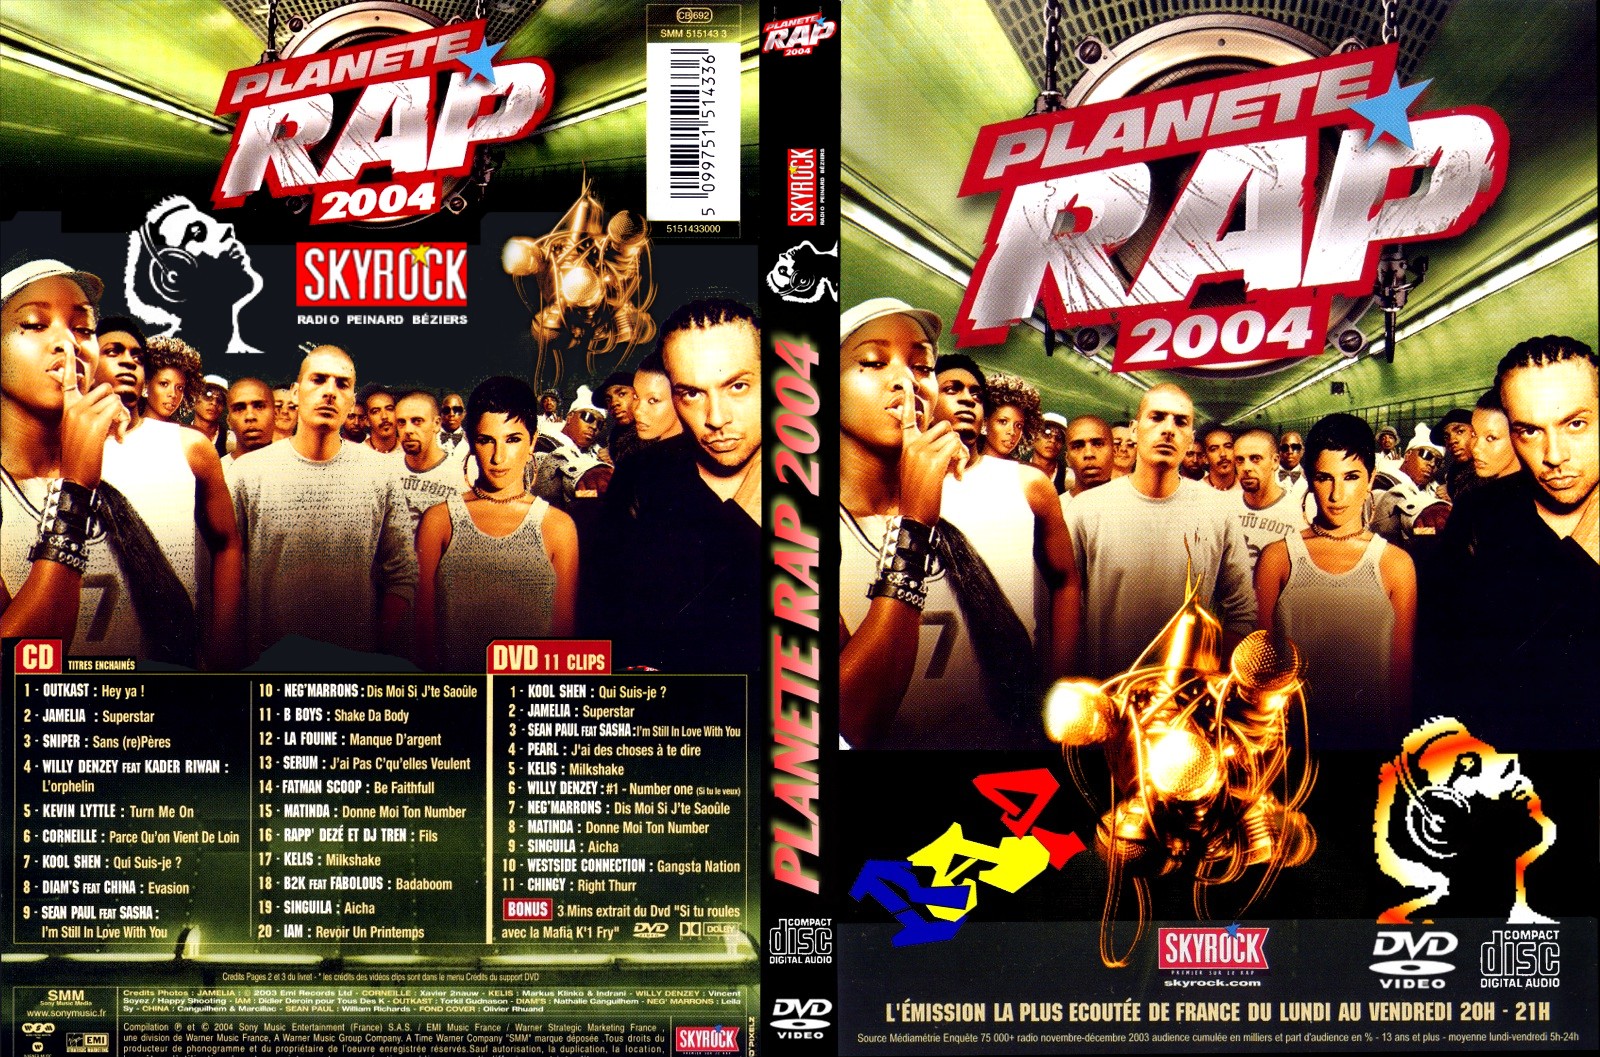 Jaquette DVD Planete RAP 2004